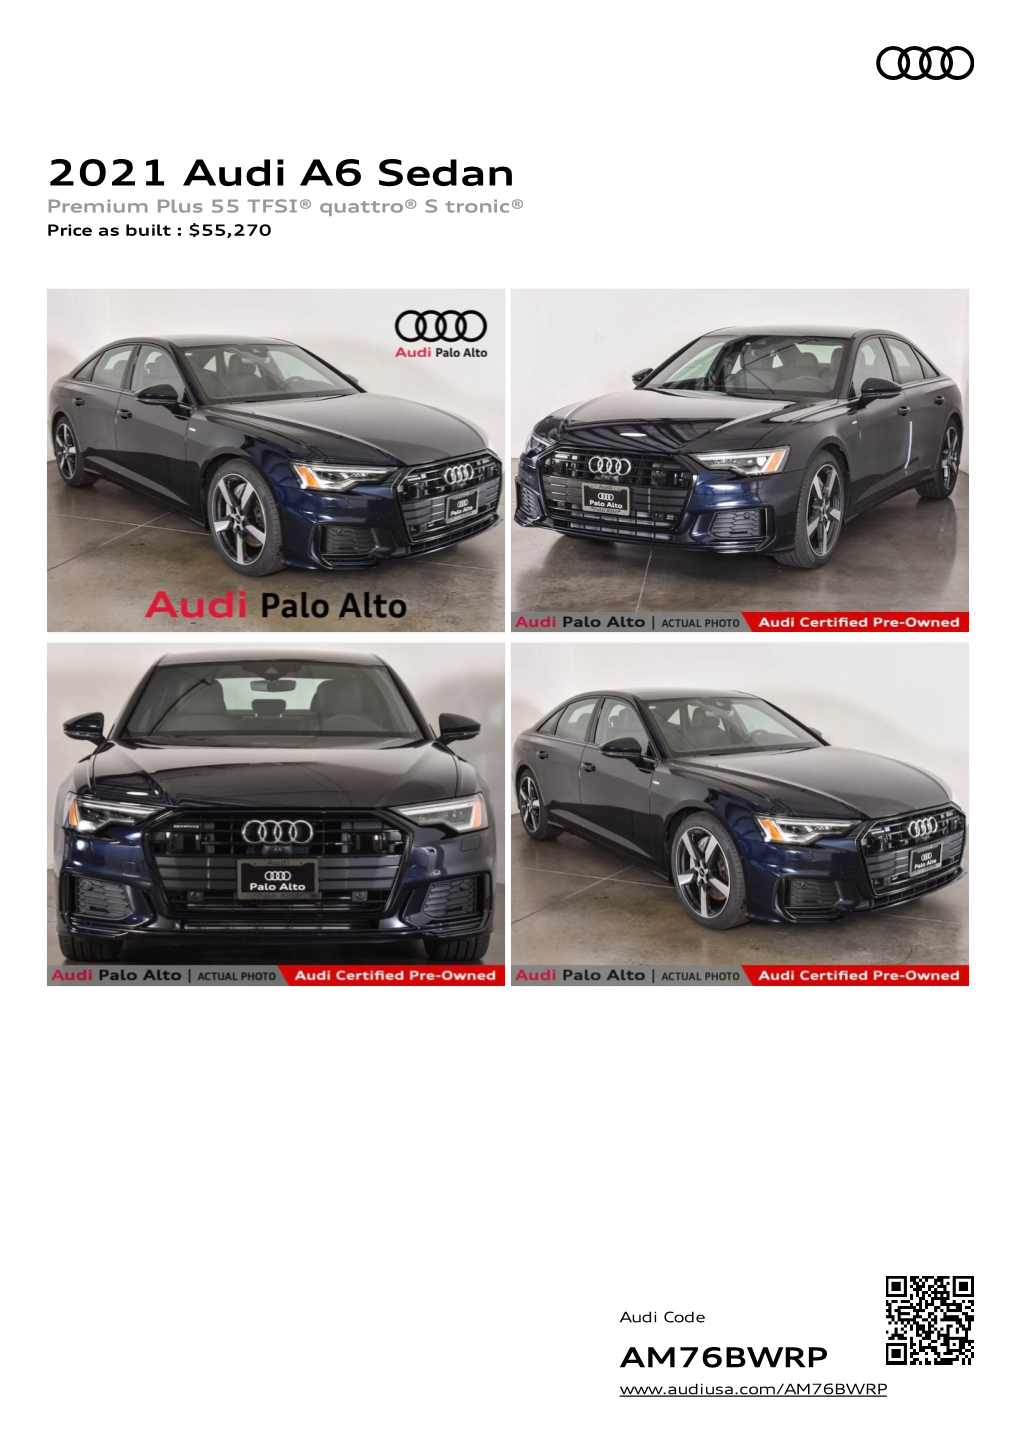 2021 Audi A6 Sedan Premium Plus 55 TFSI® Quattro® S Tronic® Price As Built : $55,270